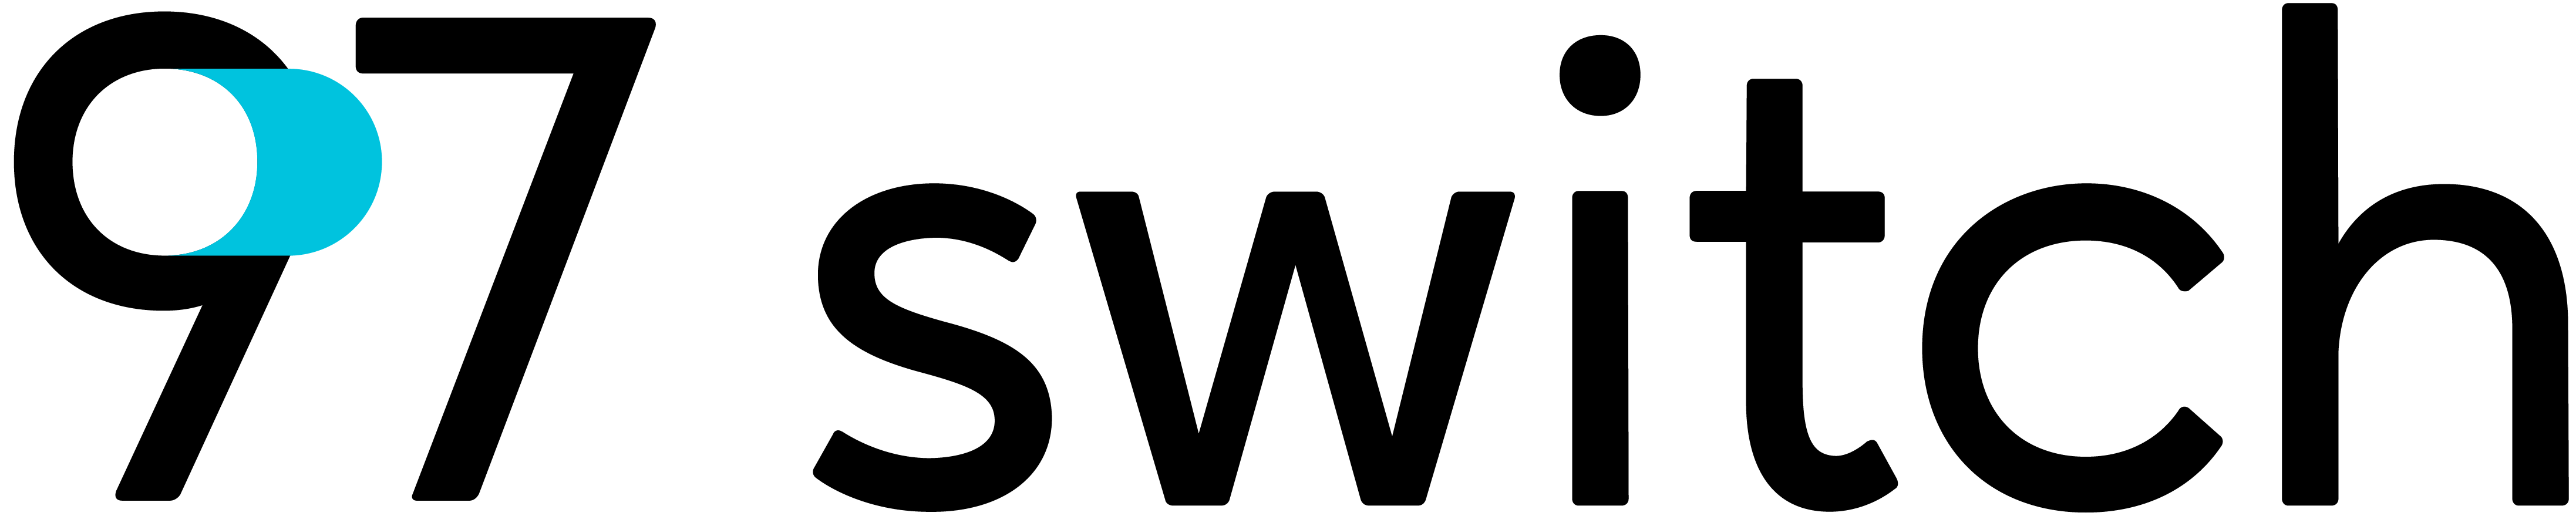 97 Switch logo